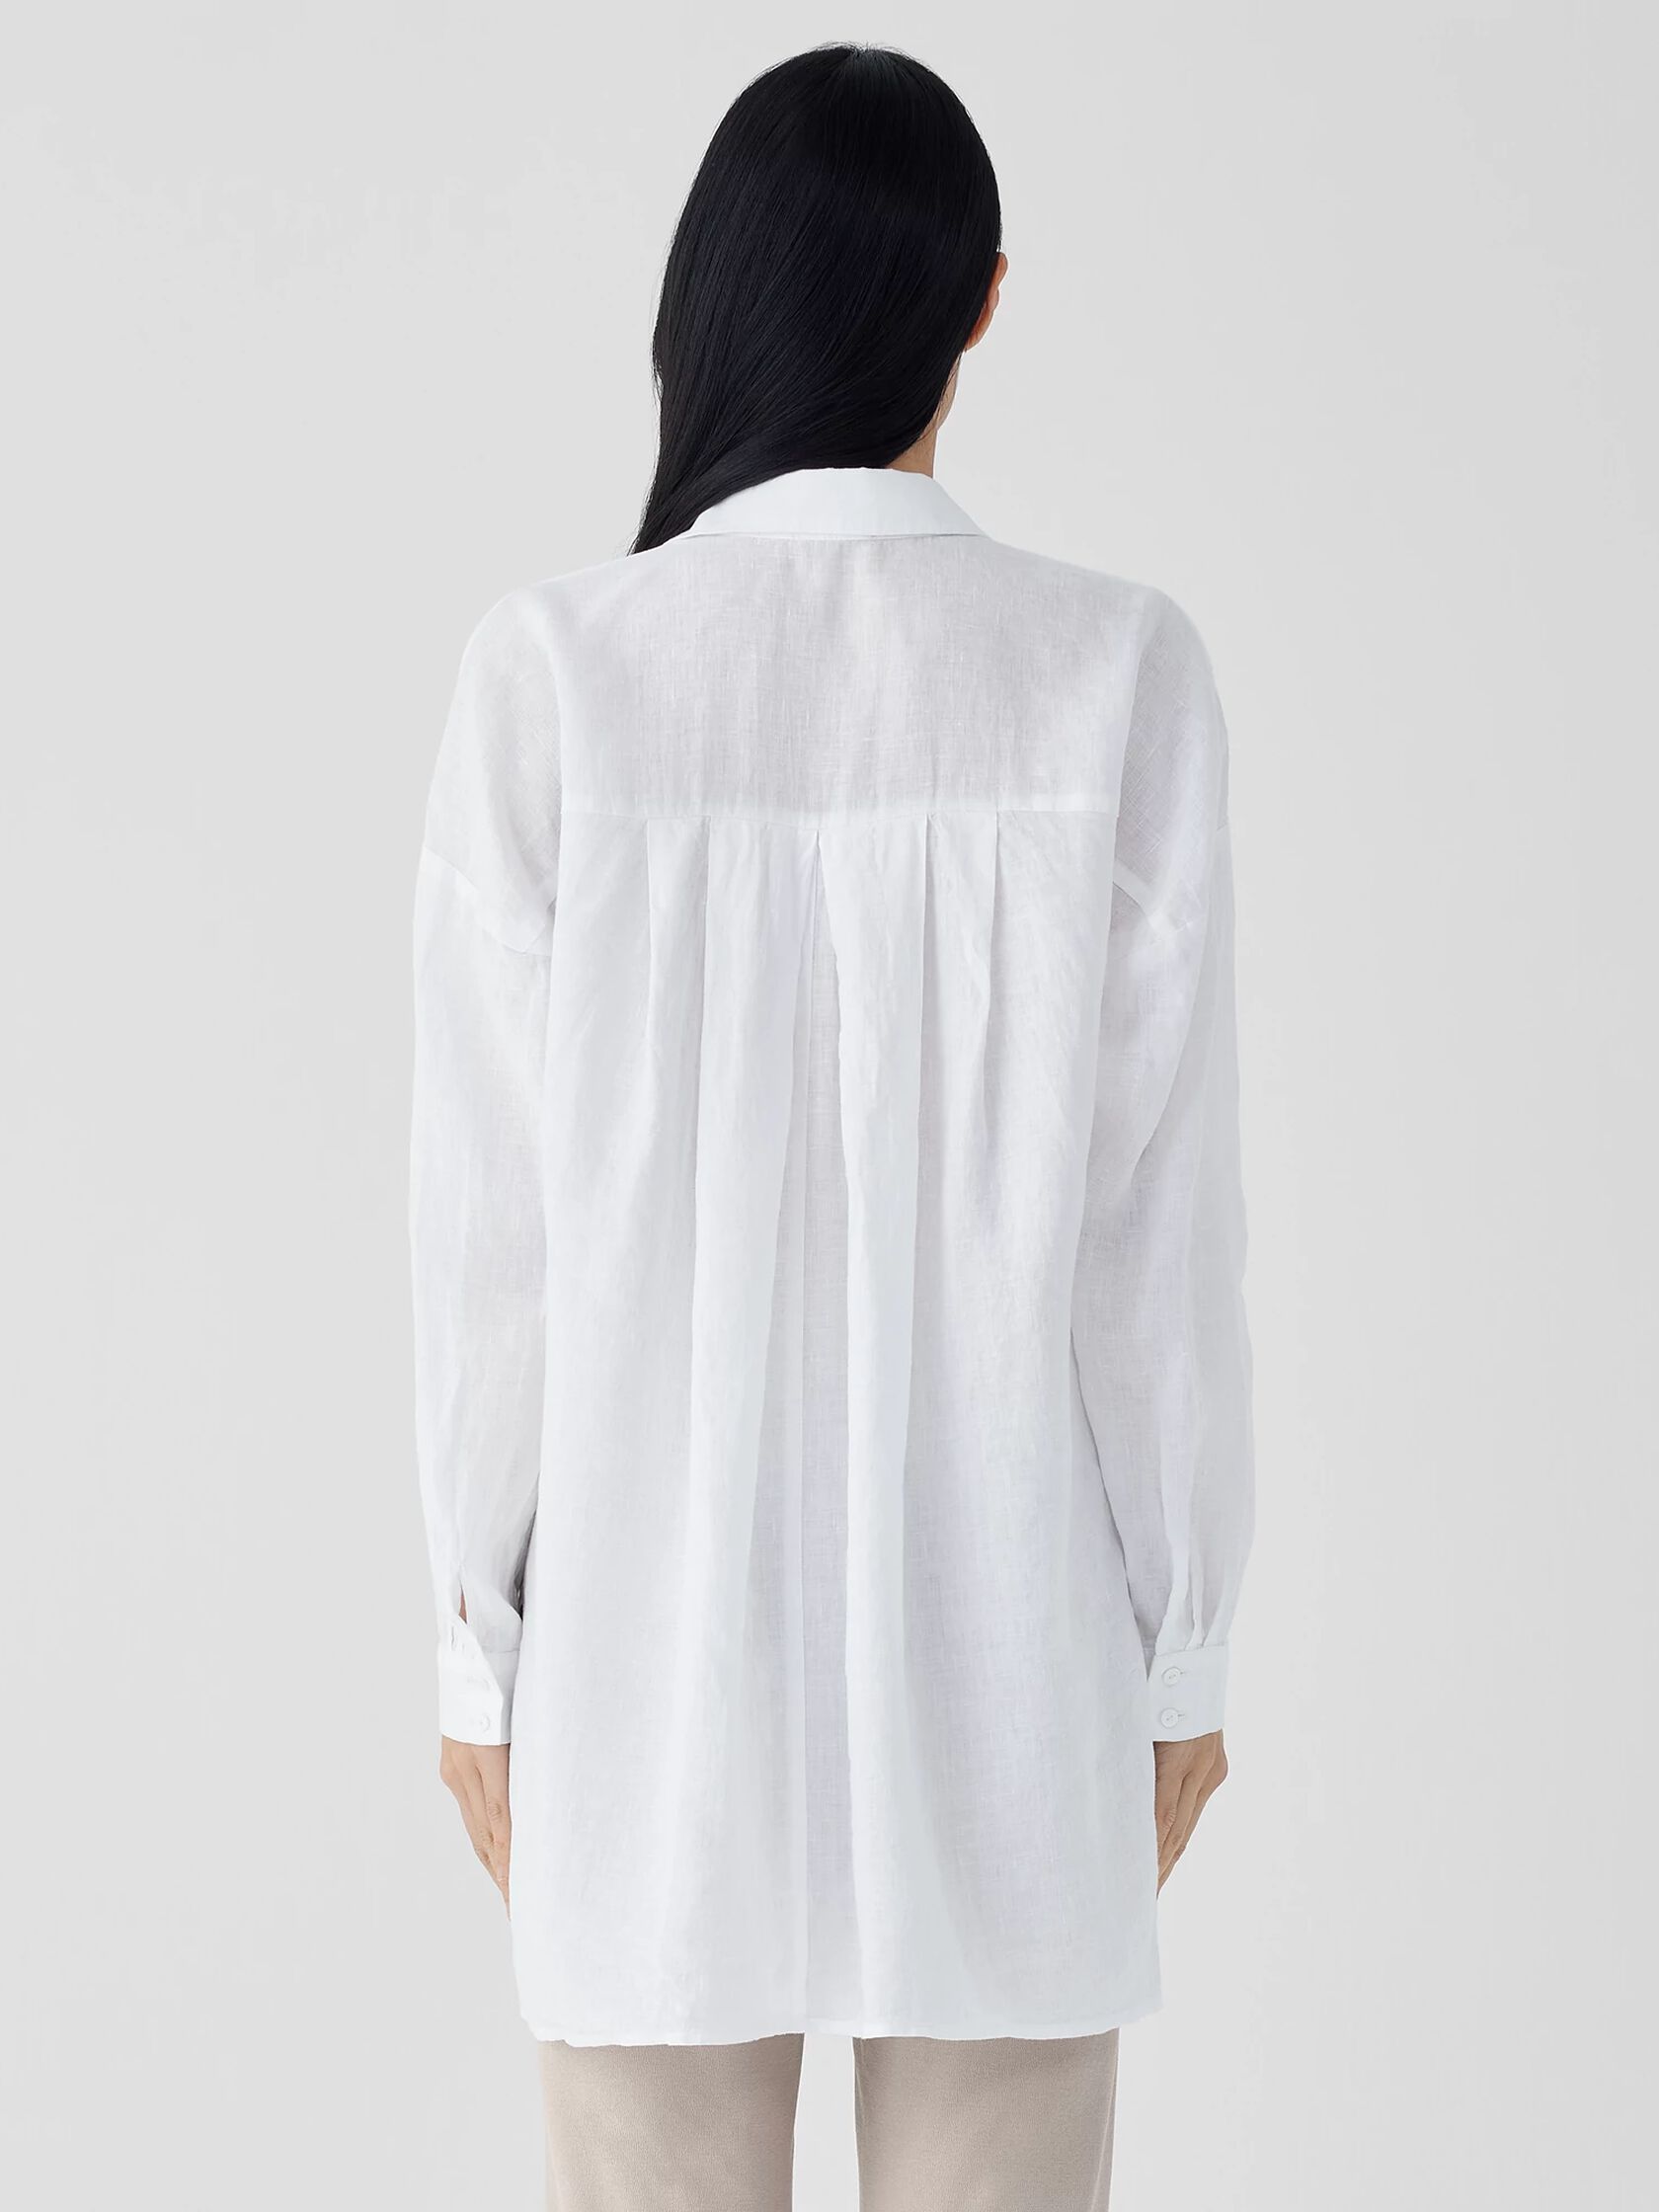 Organic Handkerchief Linen Classic Collar Long Shirt